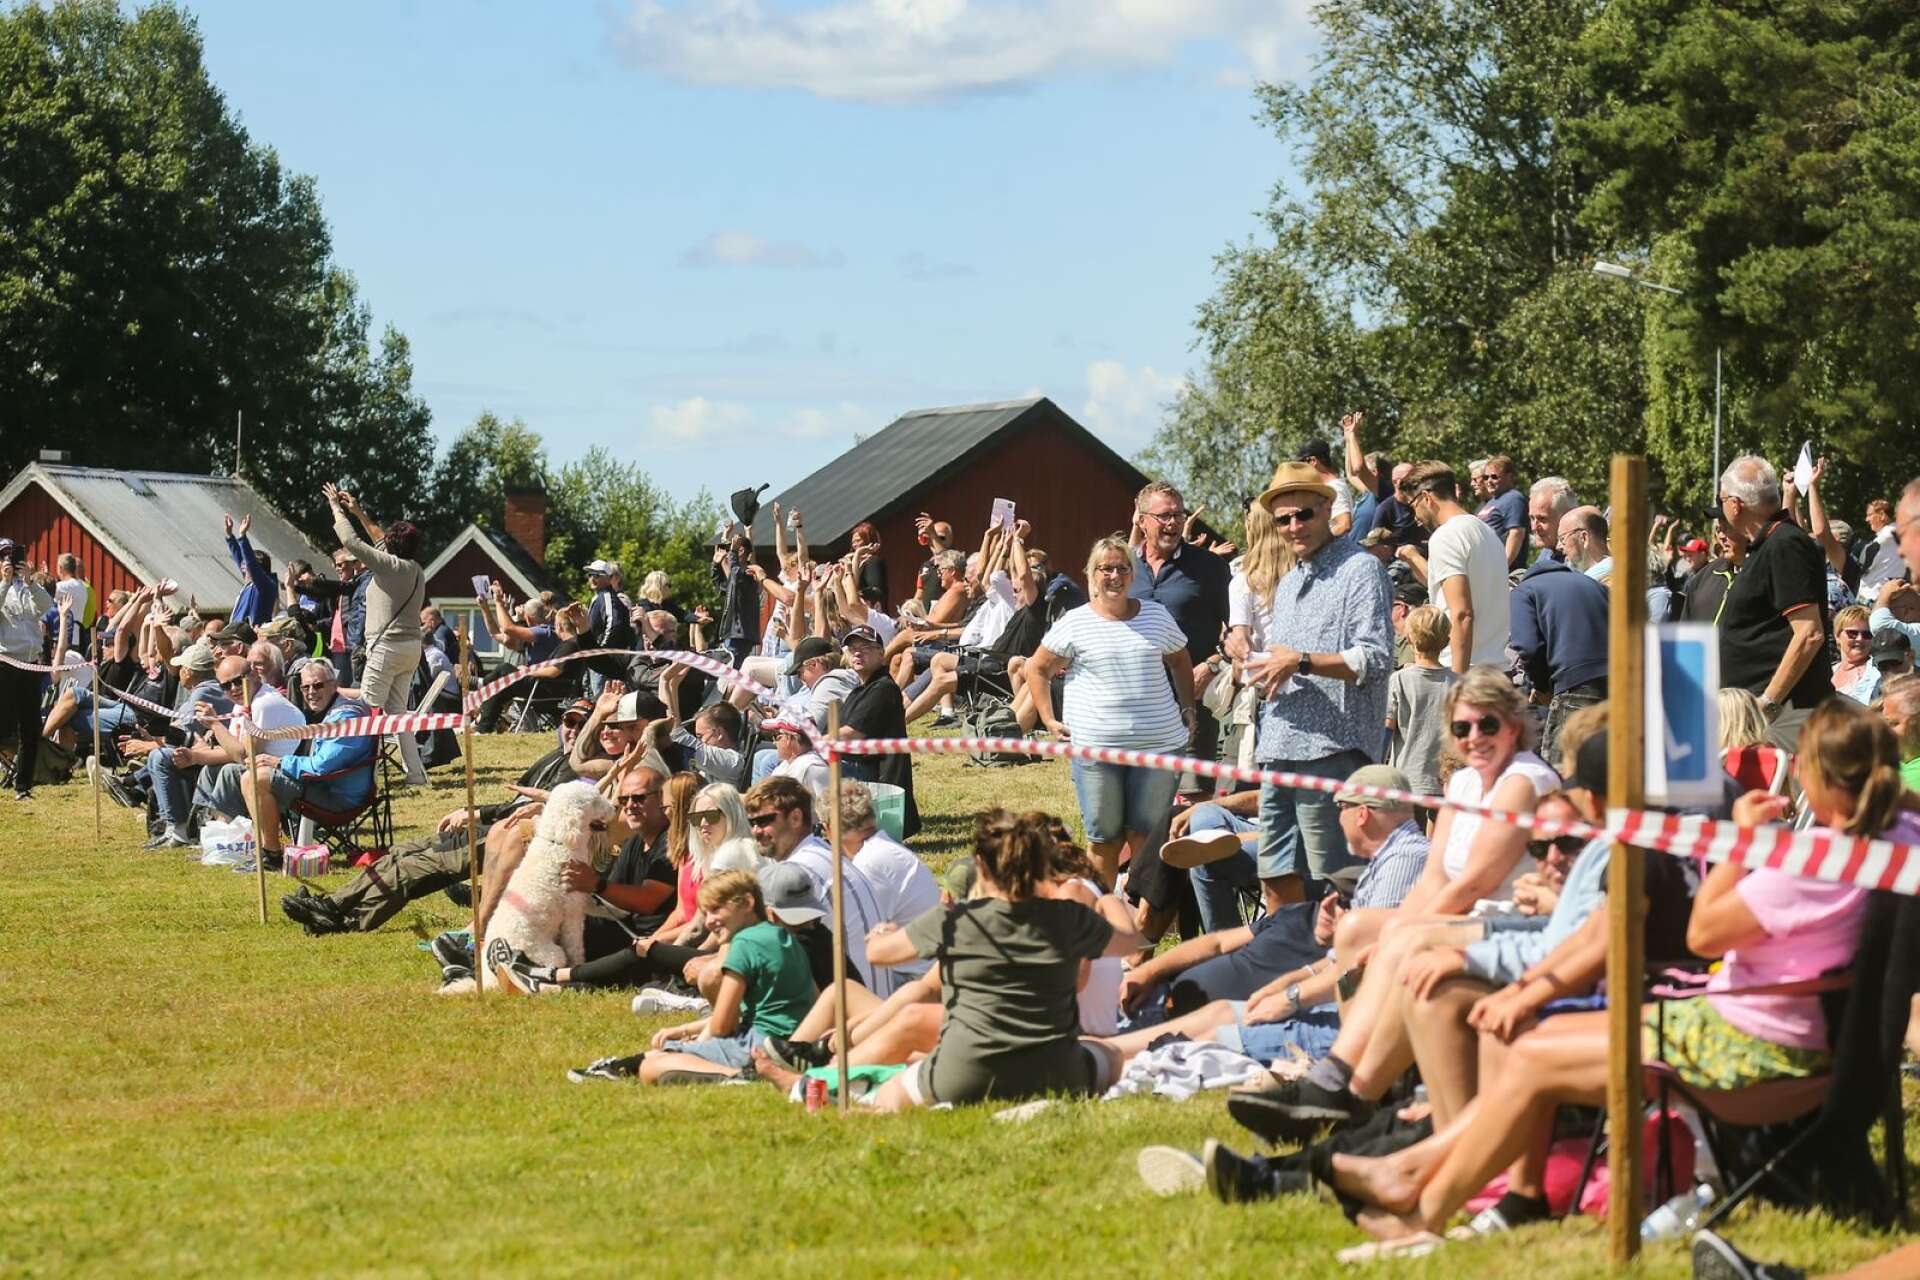 Drygt 5000 personer kom för att kolla på backrallyt i Årjäng.